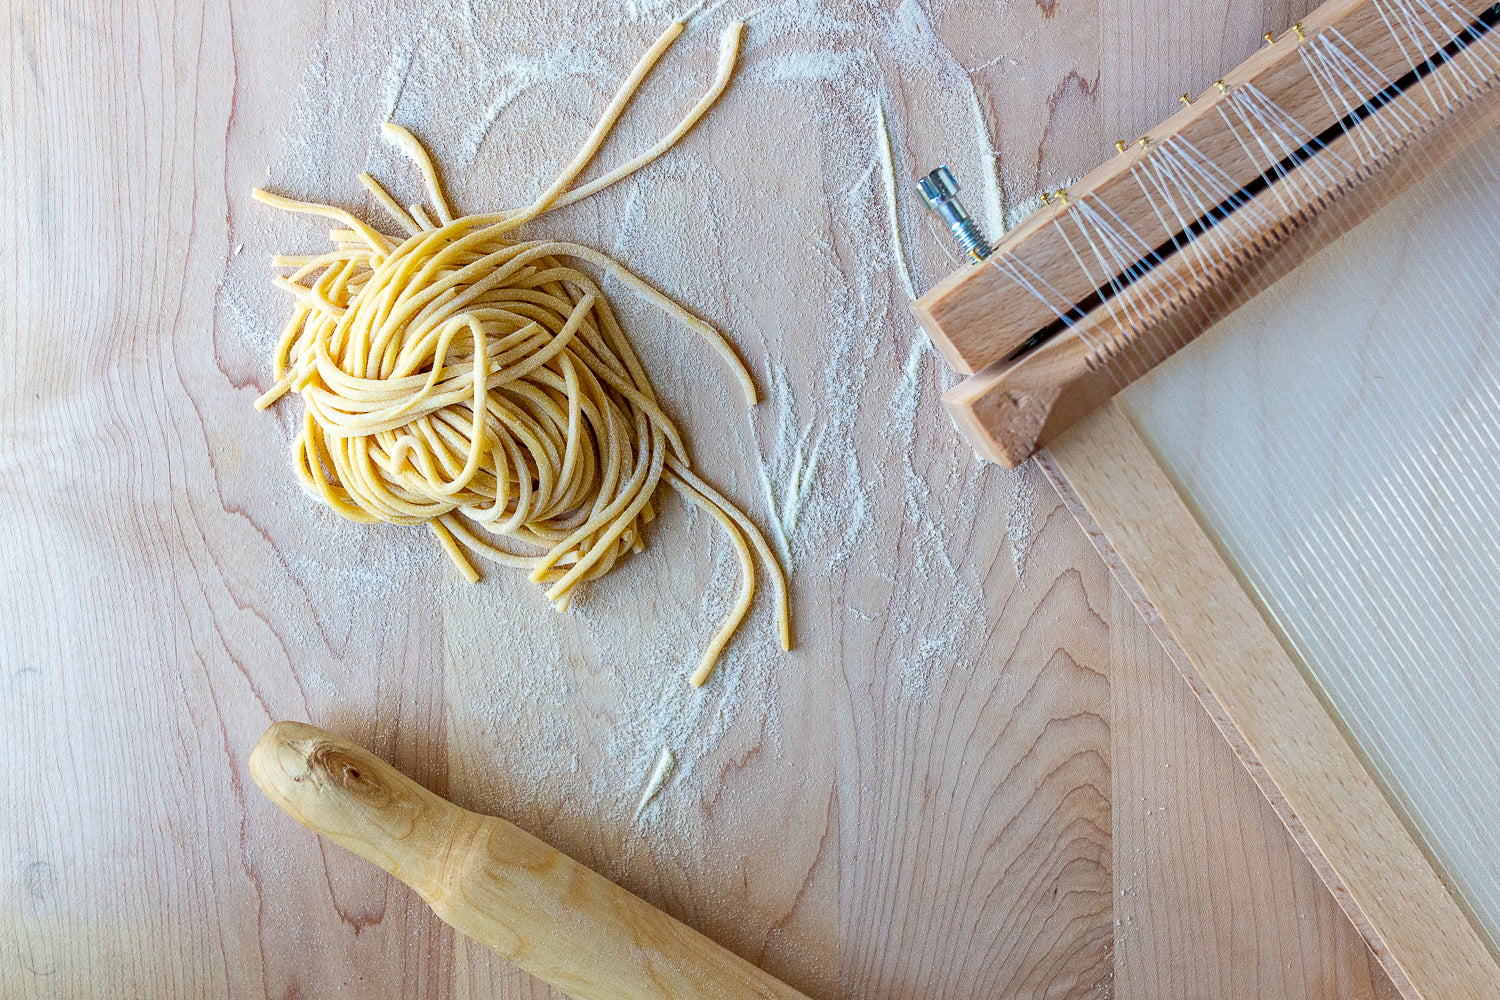 https://www.qbcucina.com/wp-content/uploads/2021/04/qb-cucina-Spaghetti-alla-Chitarra-1.jpg